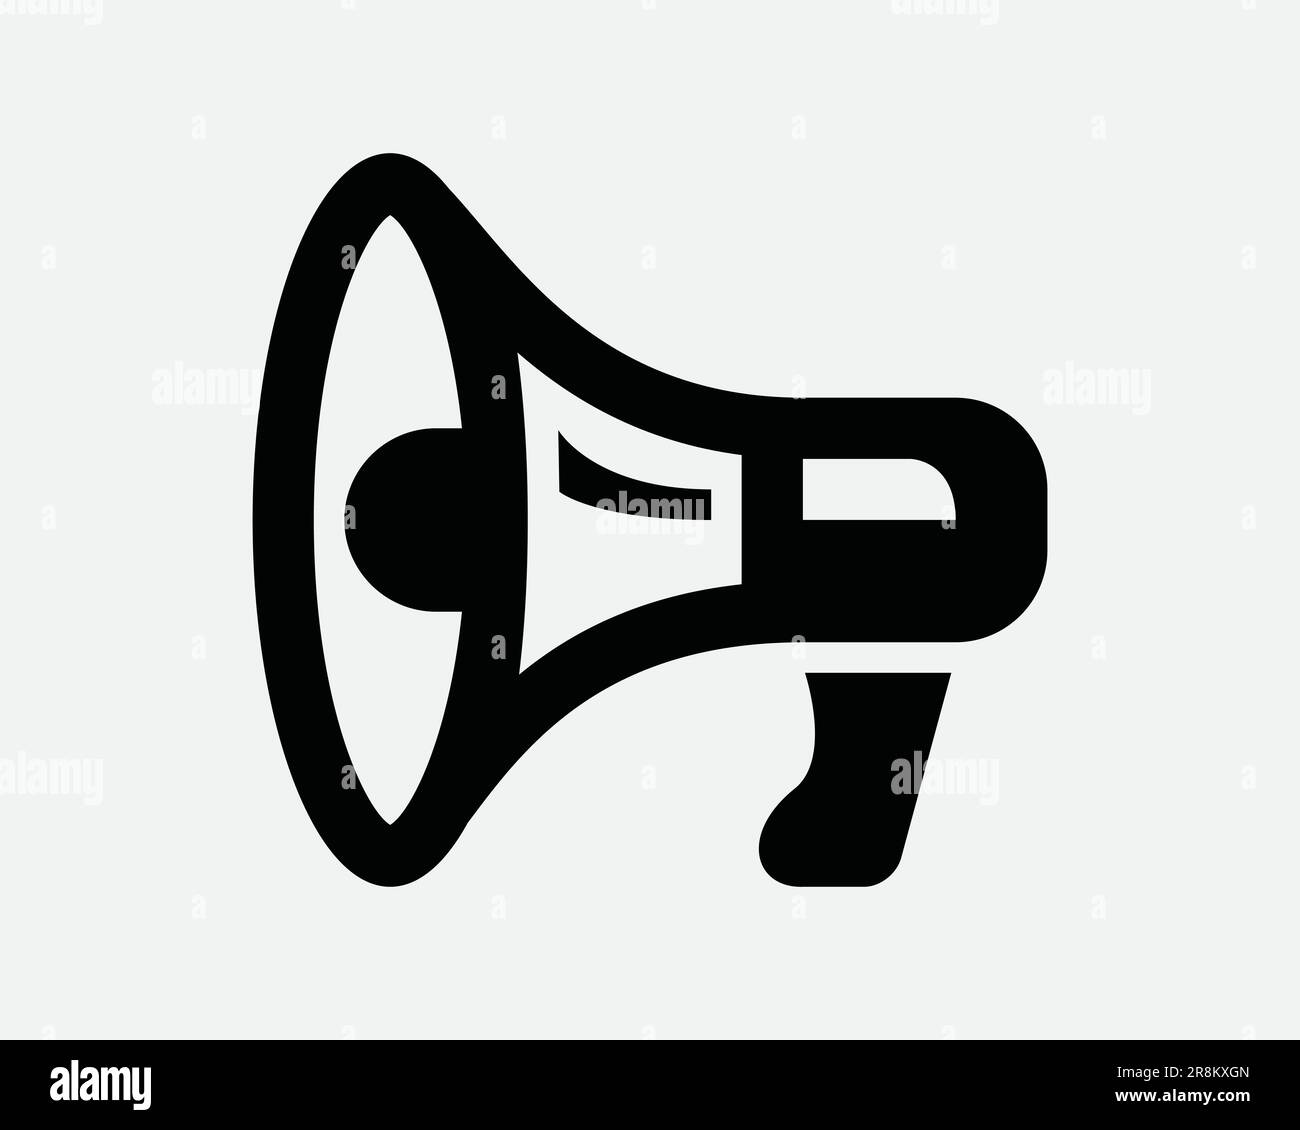 Megaphone Icon. Loudspeaker Speaker Bullhorn Announcement Message Announce Broadcast Alert Black White Sign Symbol Artwork Graphic Clipart EPS Vector Stock Vector